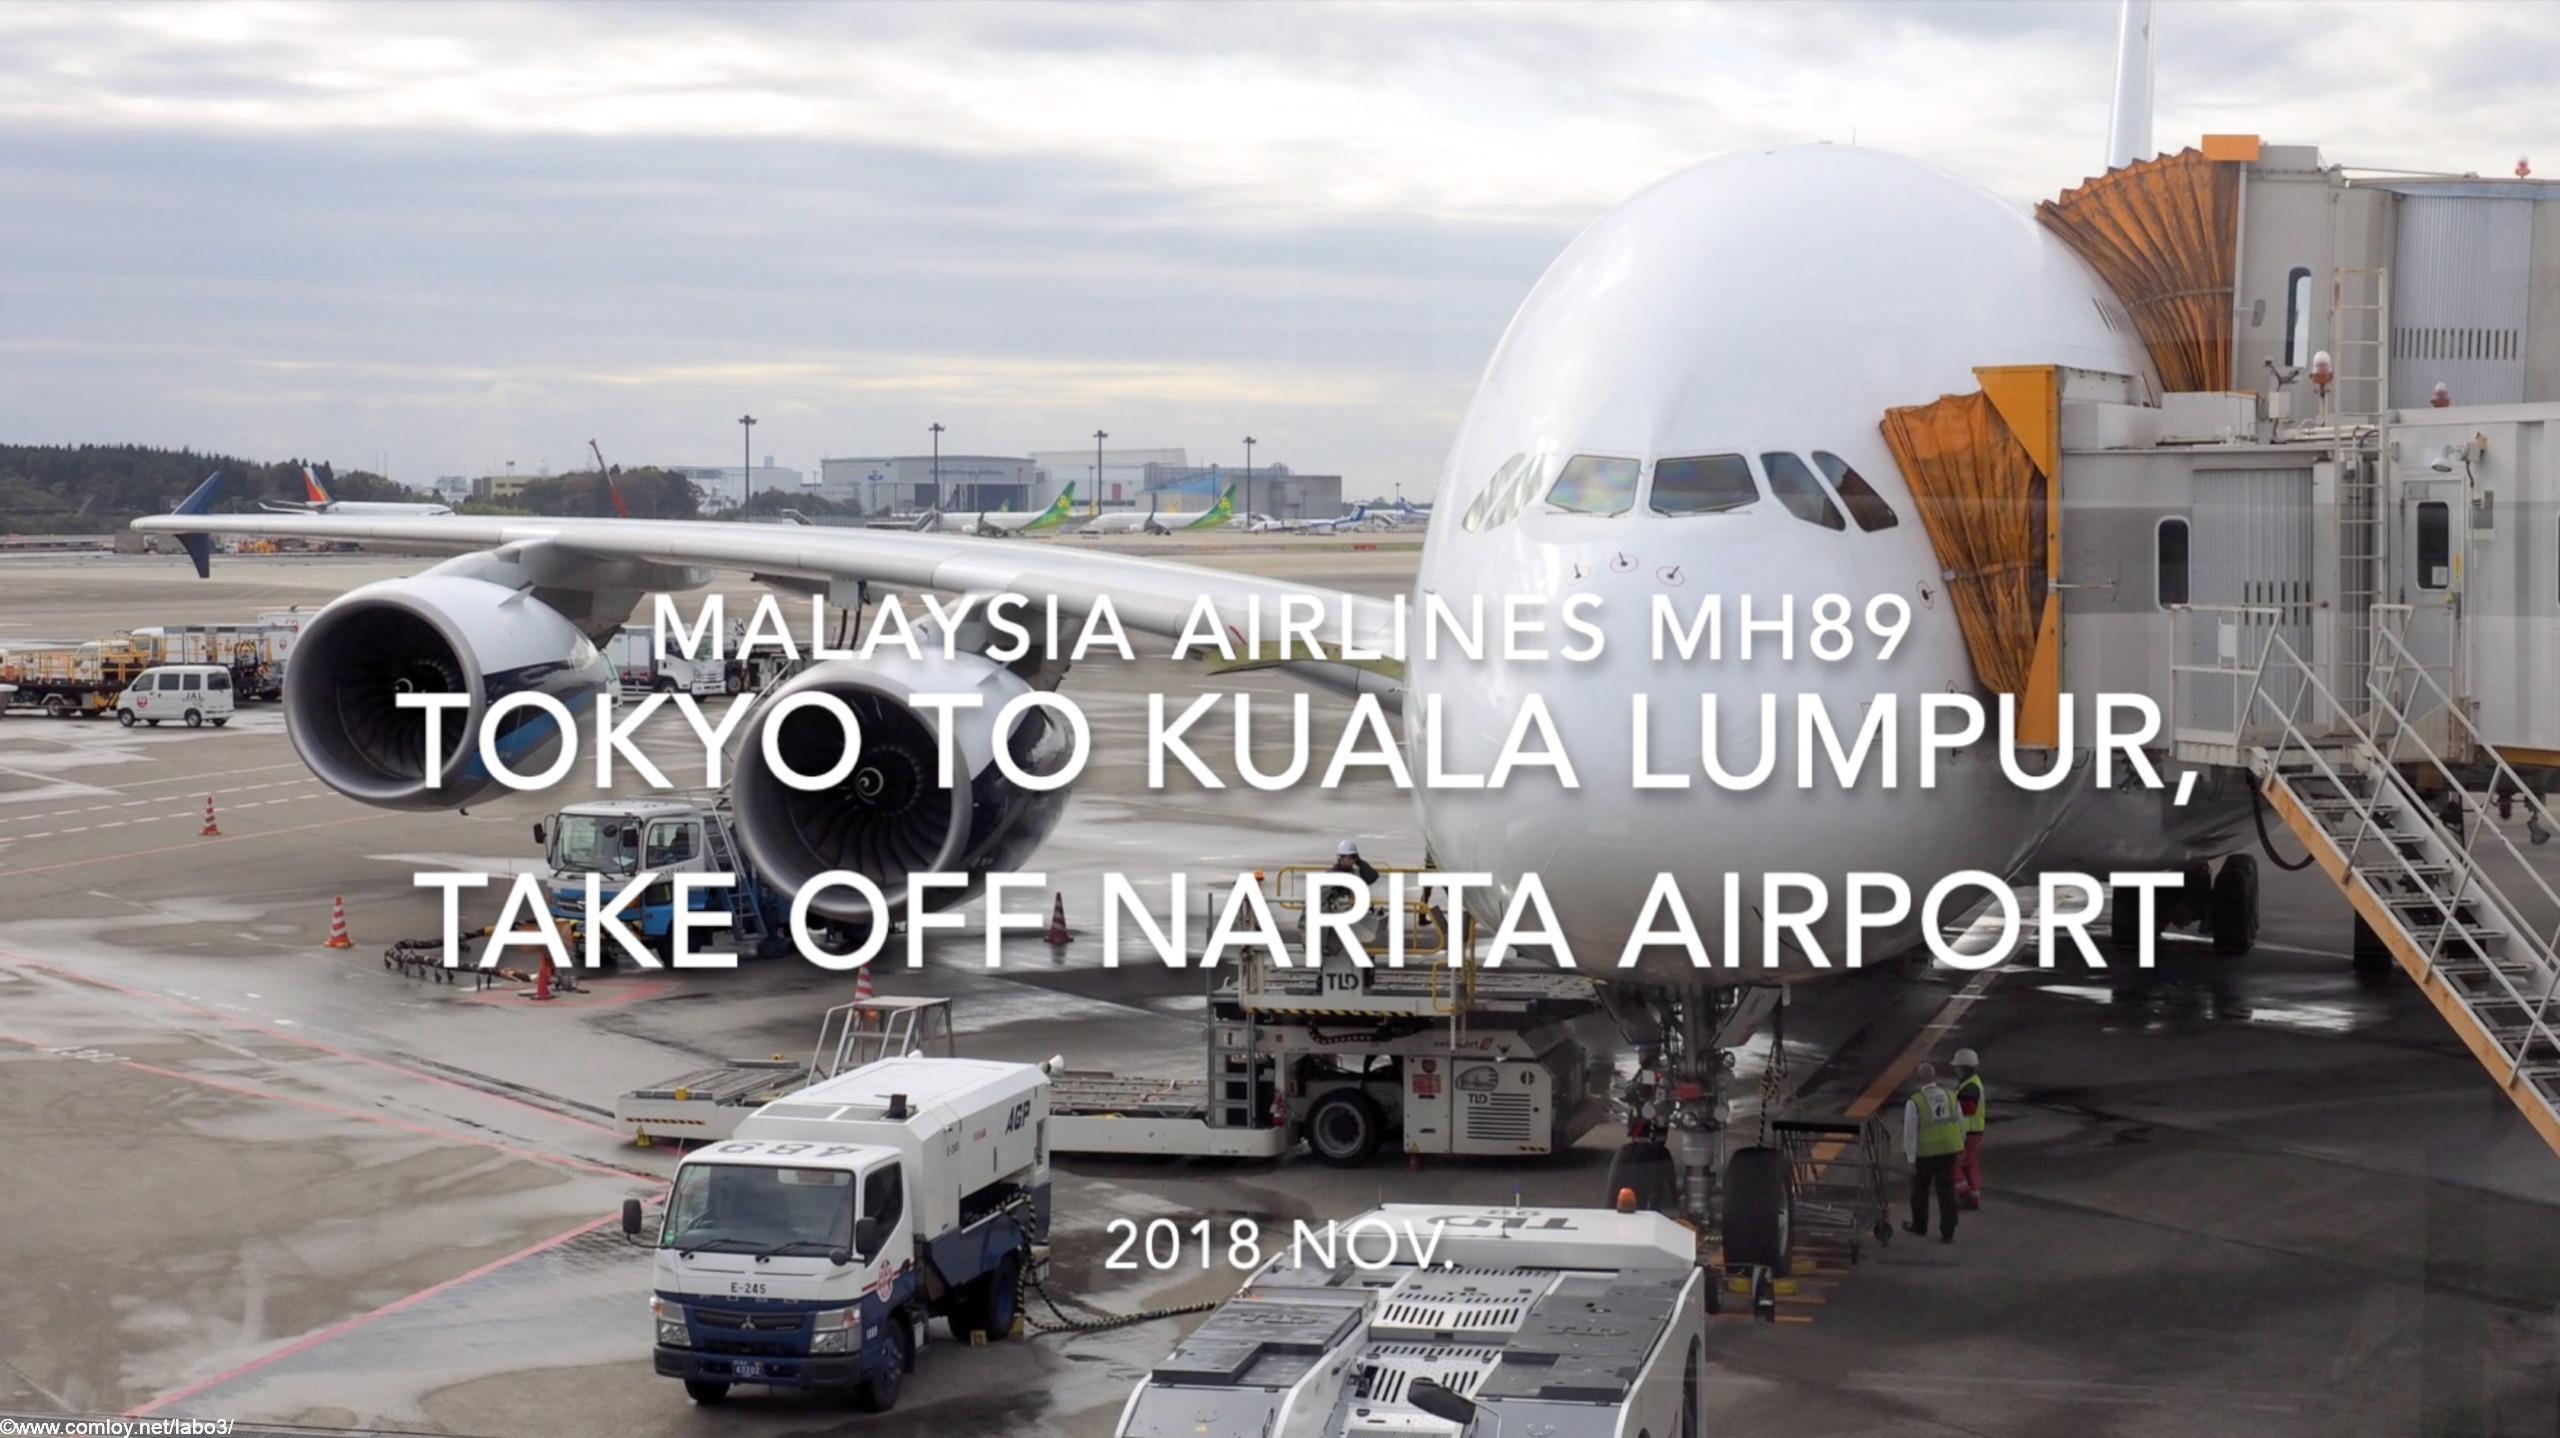 【機内から離着陸映像】2018 Nov. Malaysia Airlines MH89 TOKYO NARITA to Kuala Lumpur, Take off TOKYO NARITA airport マレーシア航空 成田 -クアラルンプール 成田空港離陸